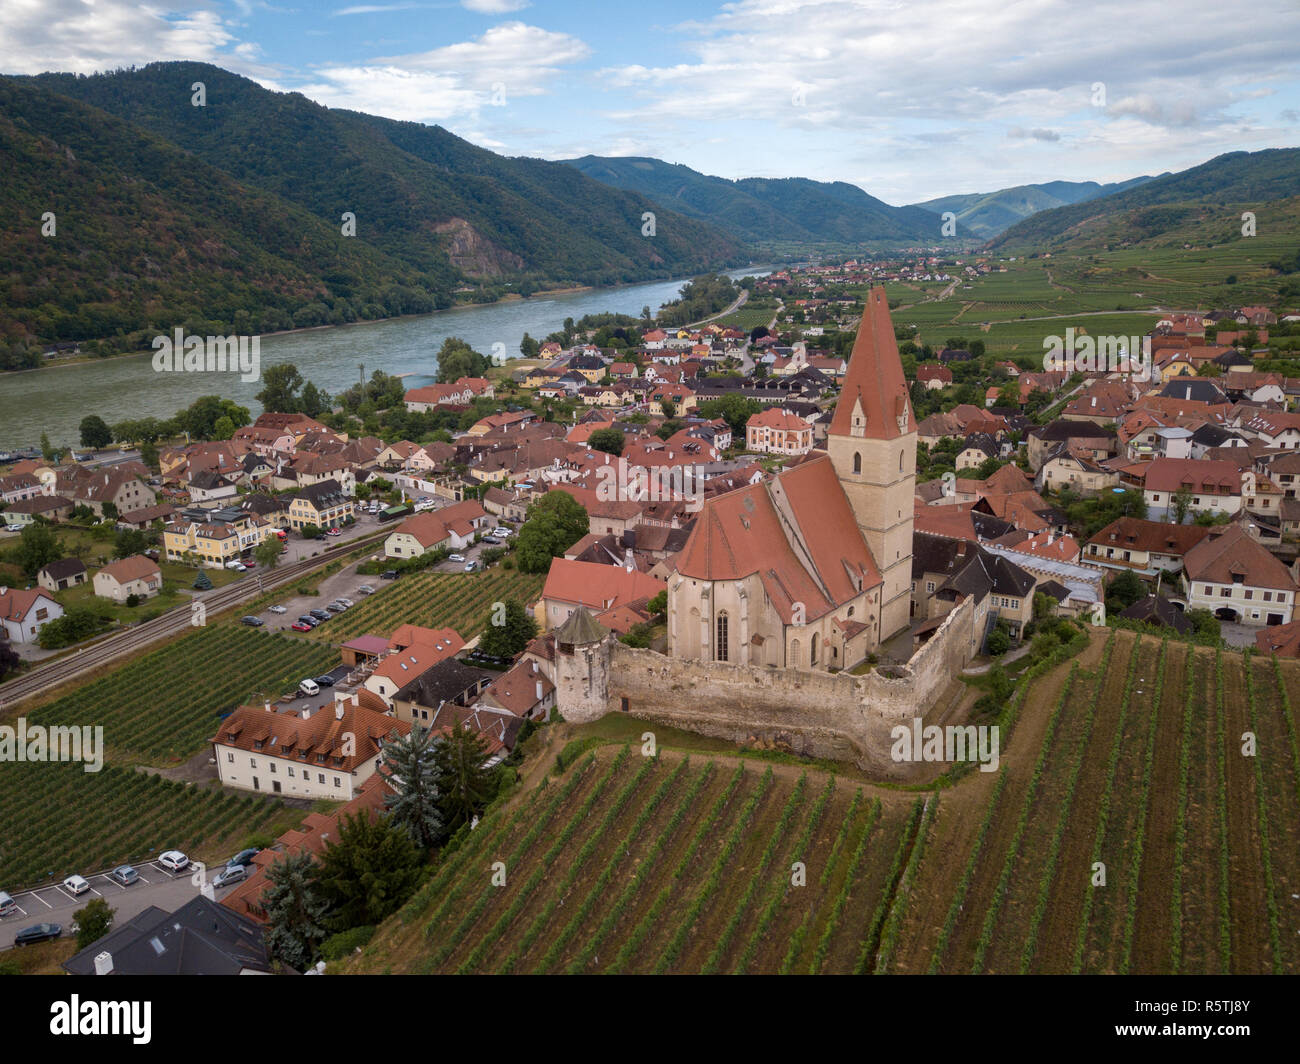 Vista aerea di Weissenkirchen splendido villaggio con cantine della regione di Wachau lungo il Danubio in Austria con fortificata medievale Cattolica Romana Foto Stock